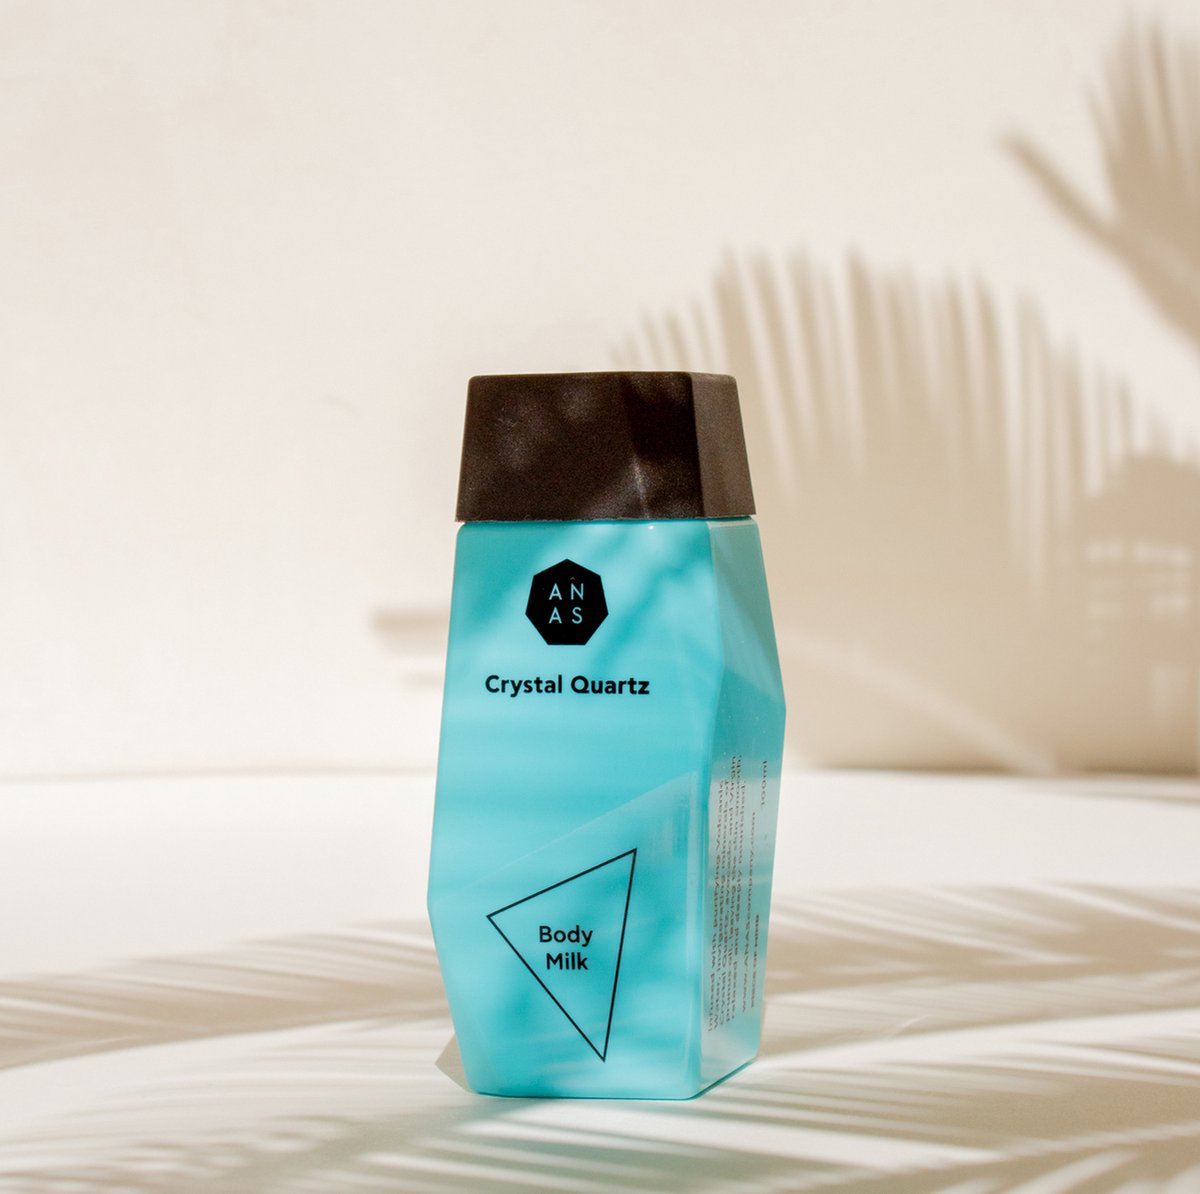 ANAS Body Milk - Verbetert de structuur van je huid - Heerlijke frisse geur - Met een rijke natuurlijke formule - Met bergkristal - 100ML